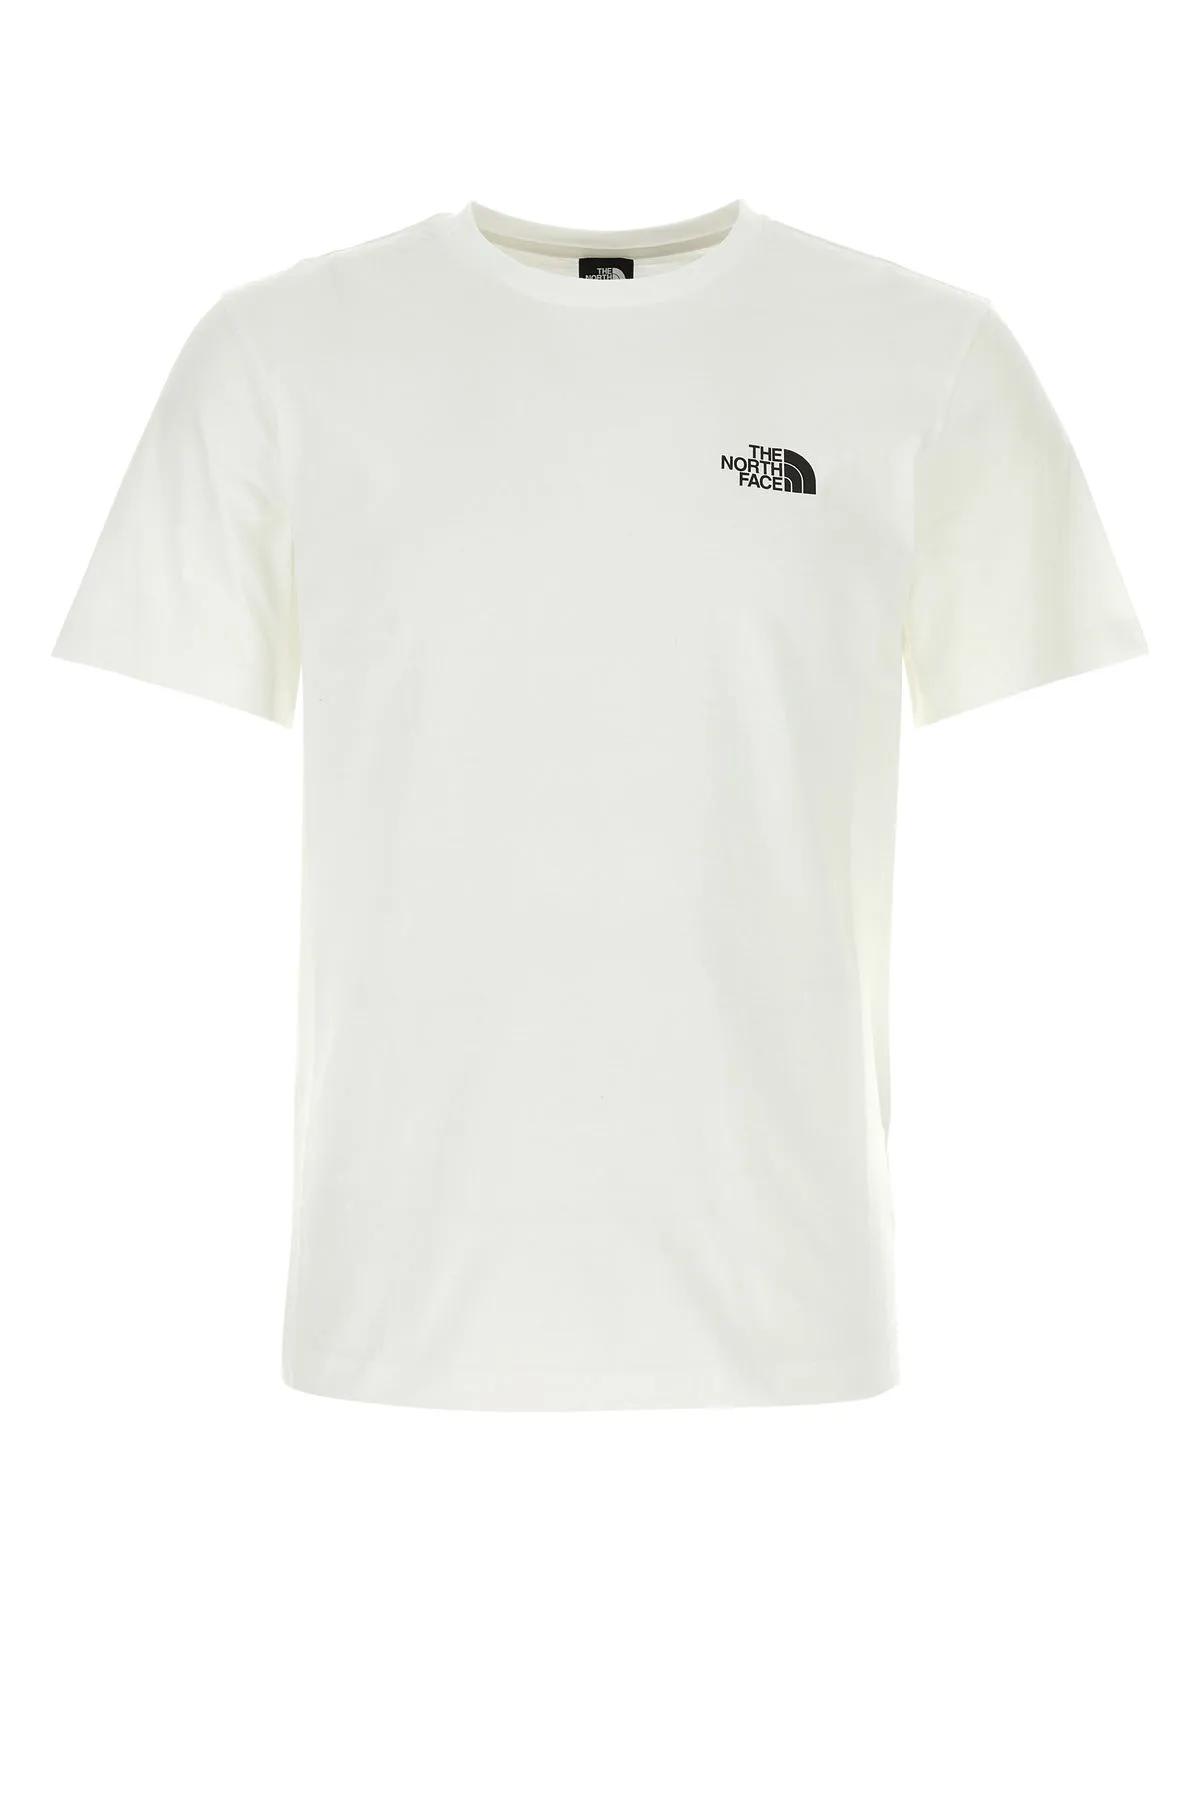 Shop The North Face White Cotton Blend T-shirt